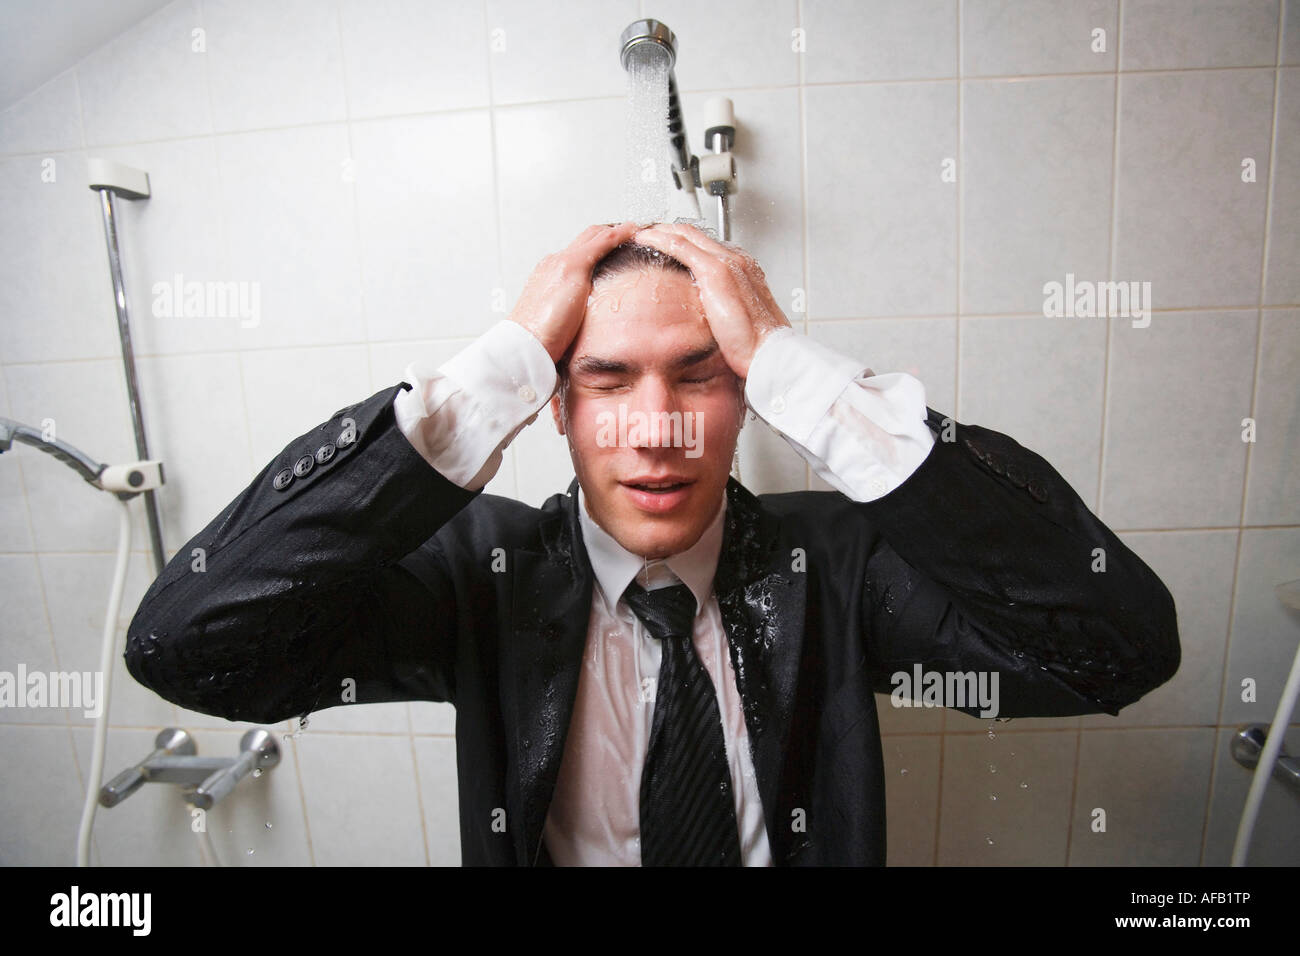 Businessman under shower Stock Photo